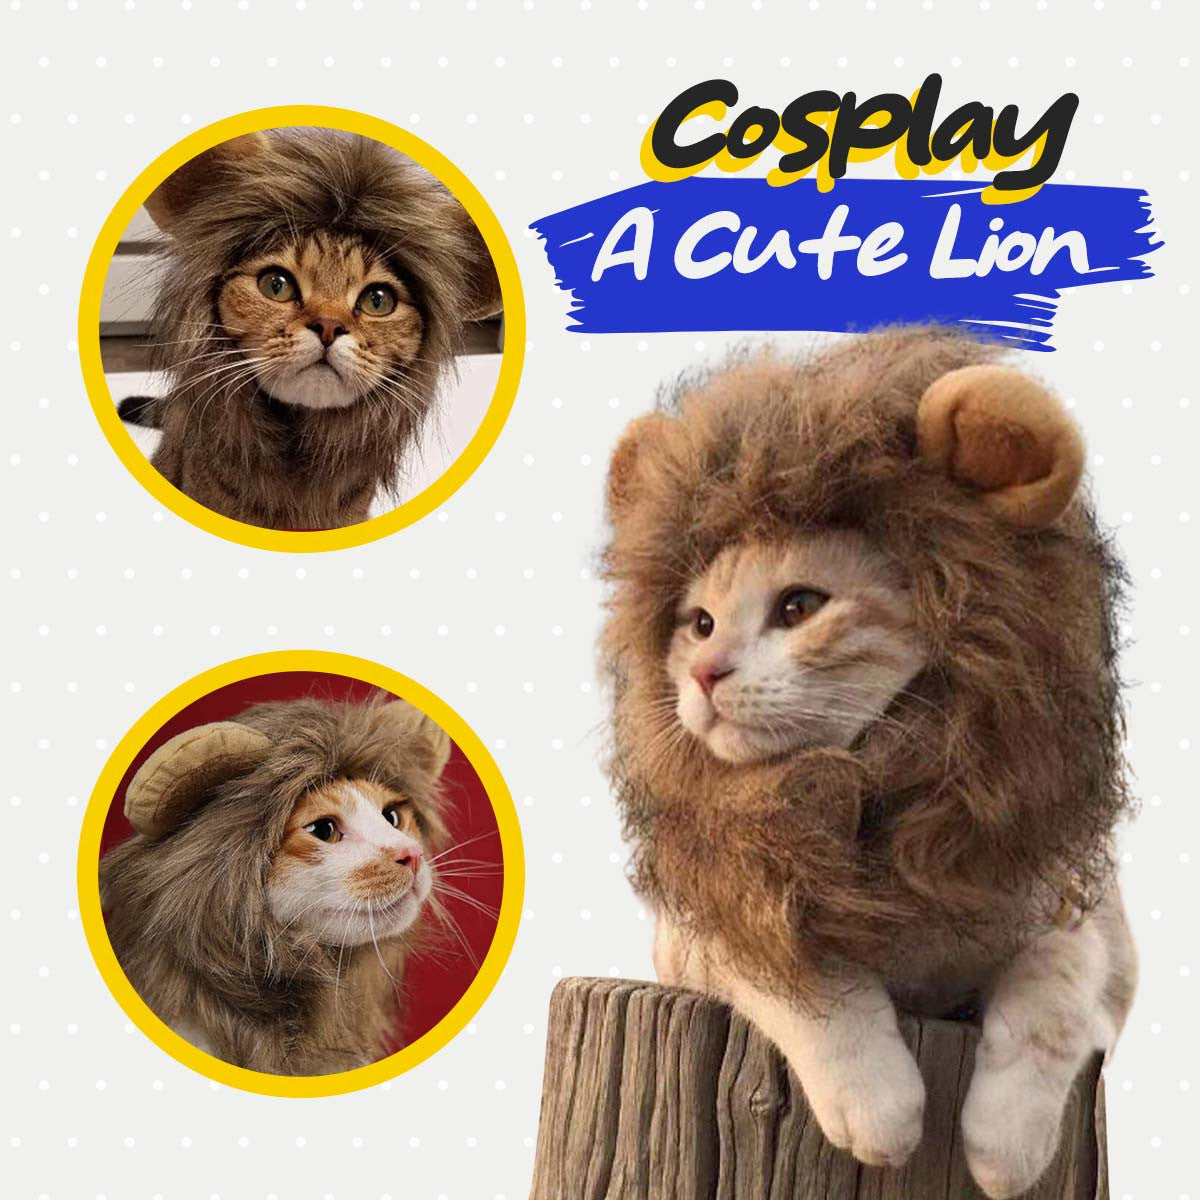 Cat Lion Mane - Criniera di Leone per Cane/Gatto